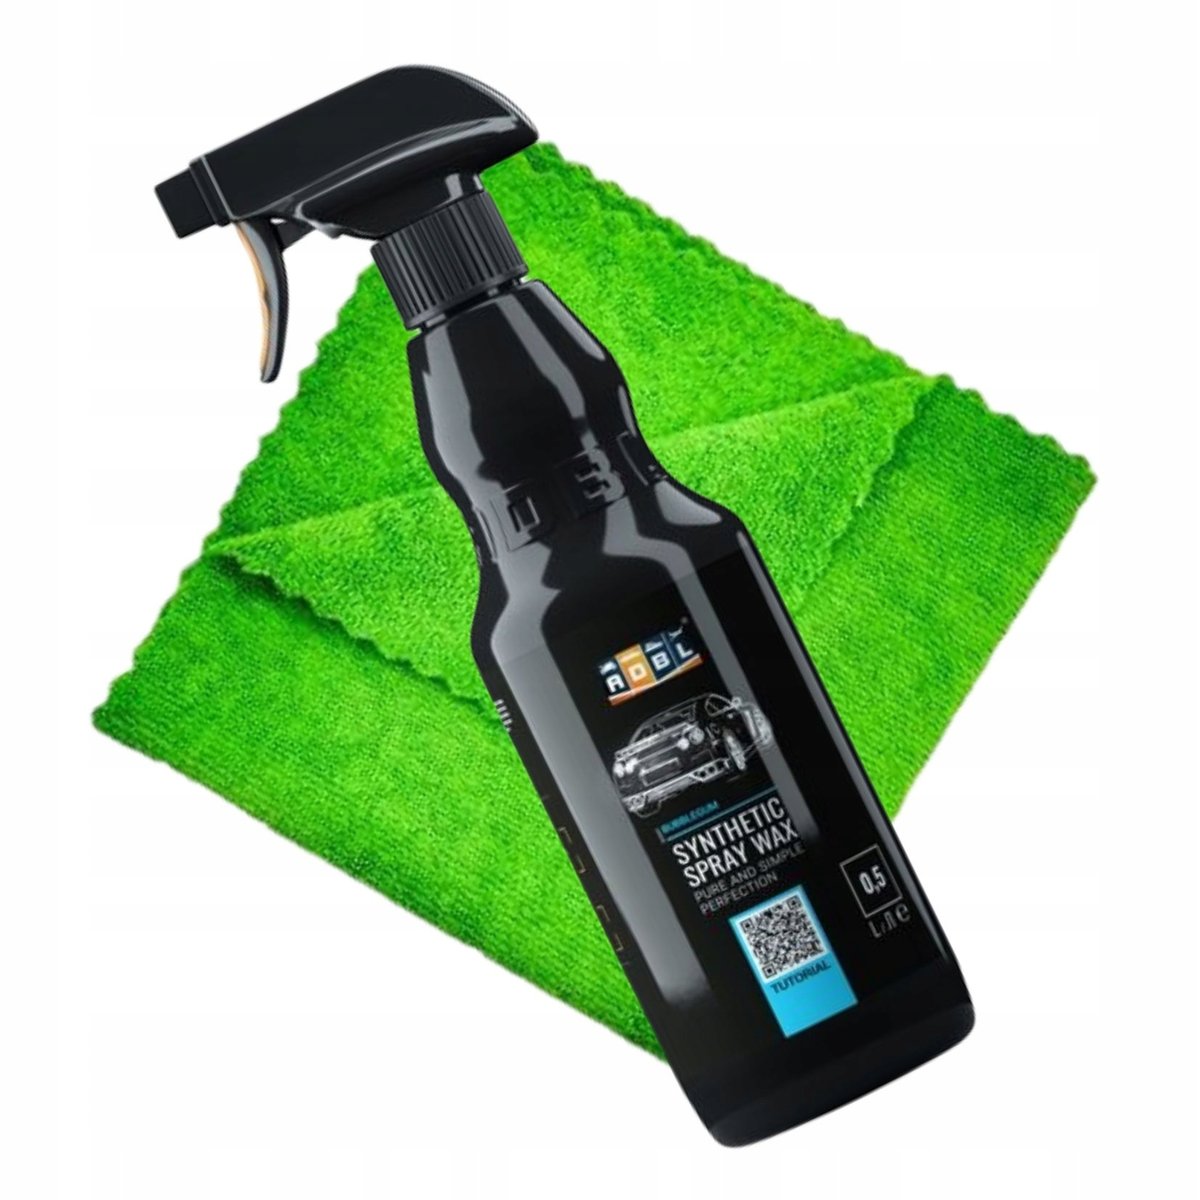 Adbl Synthetic Spray Wax Wosk W Płynie 500ml 0,5L - ADBL